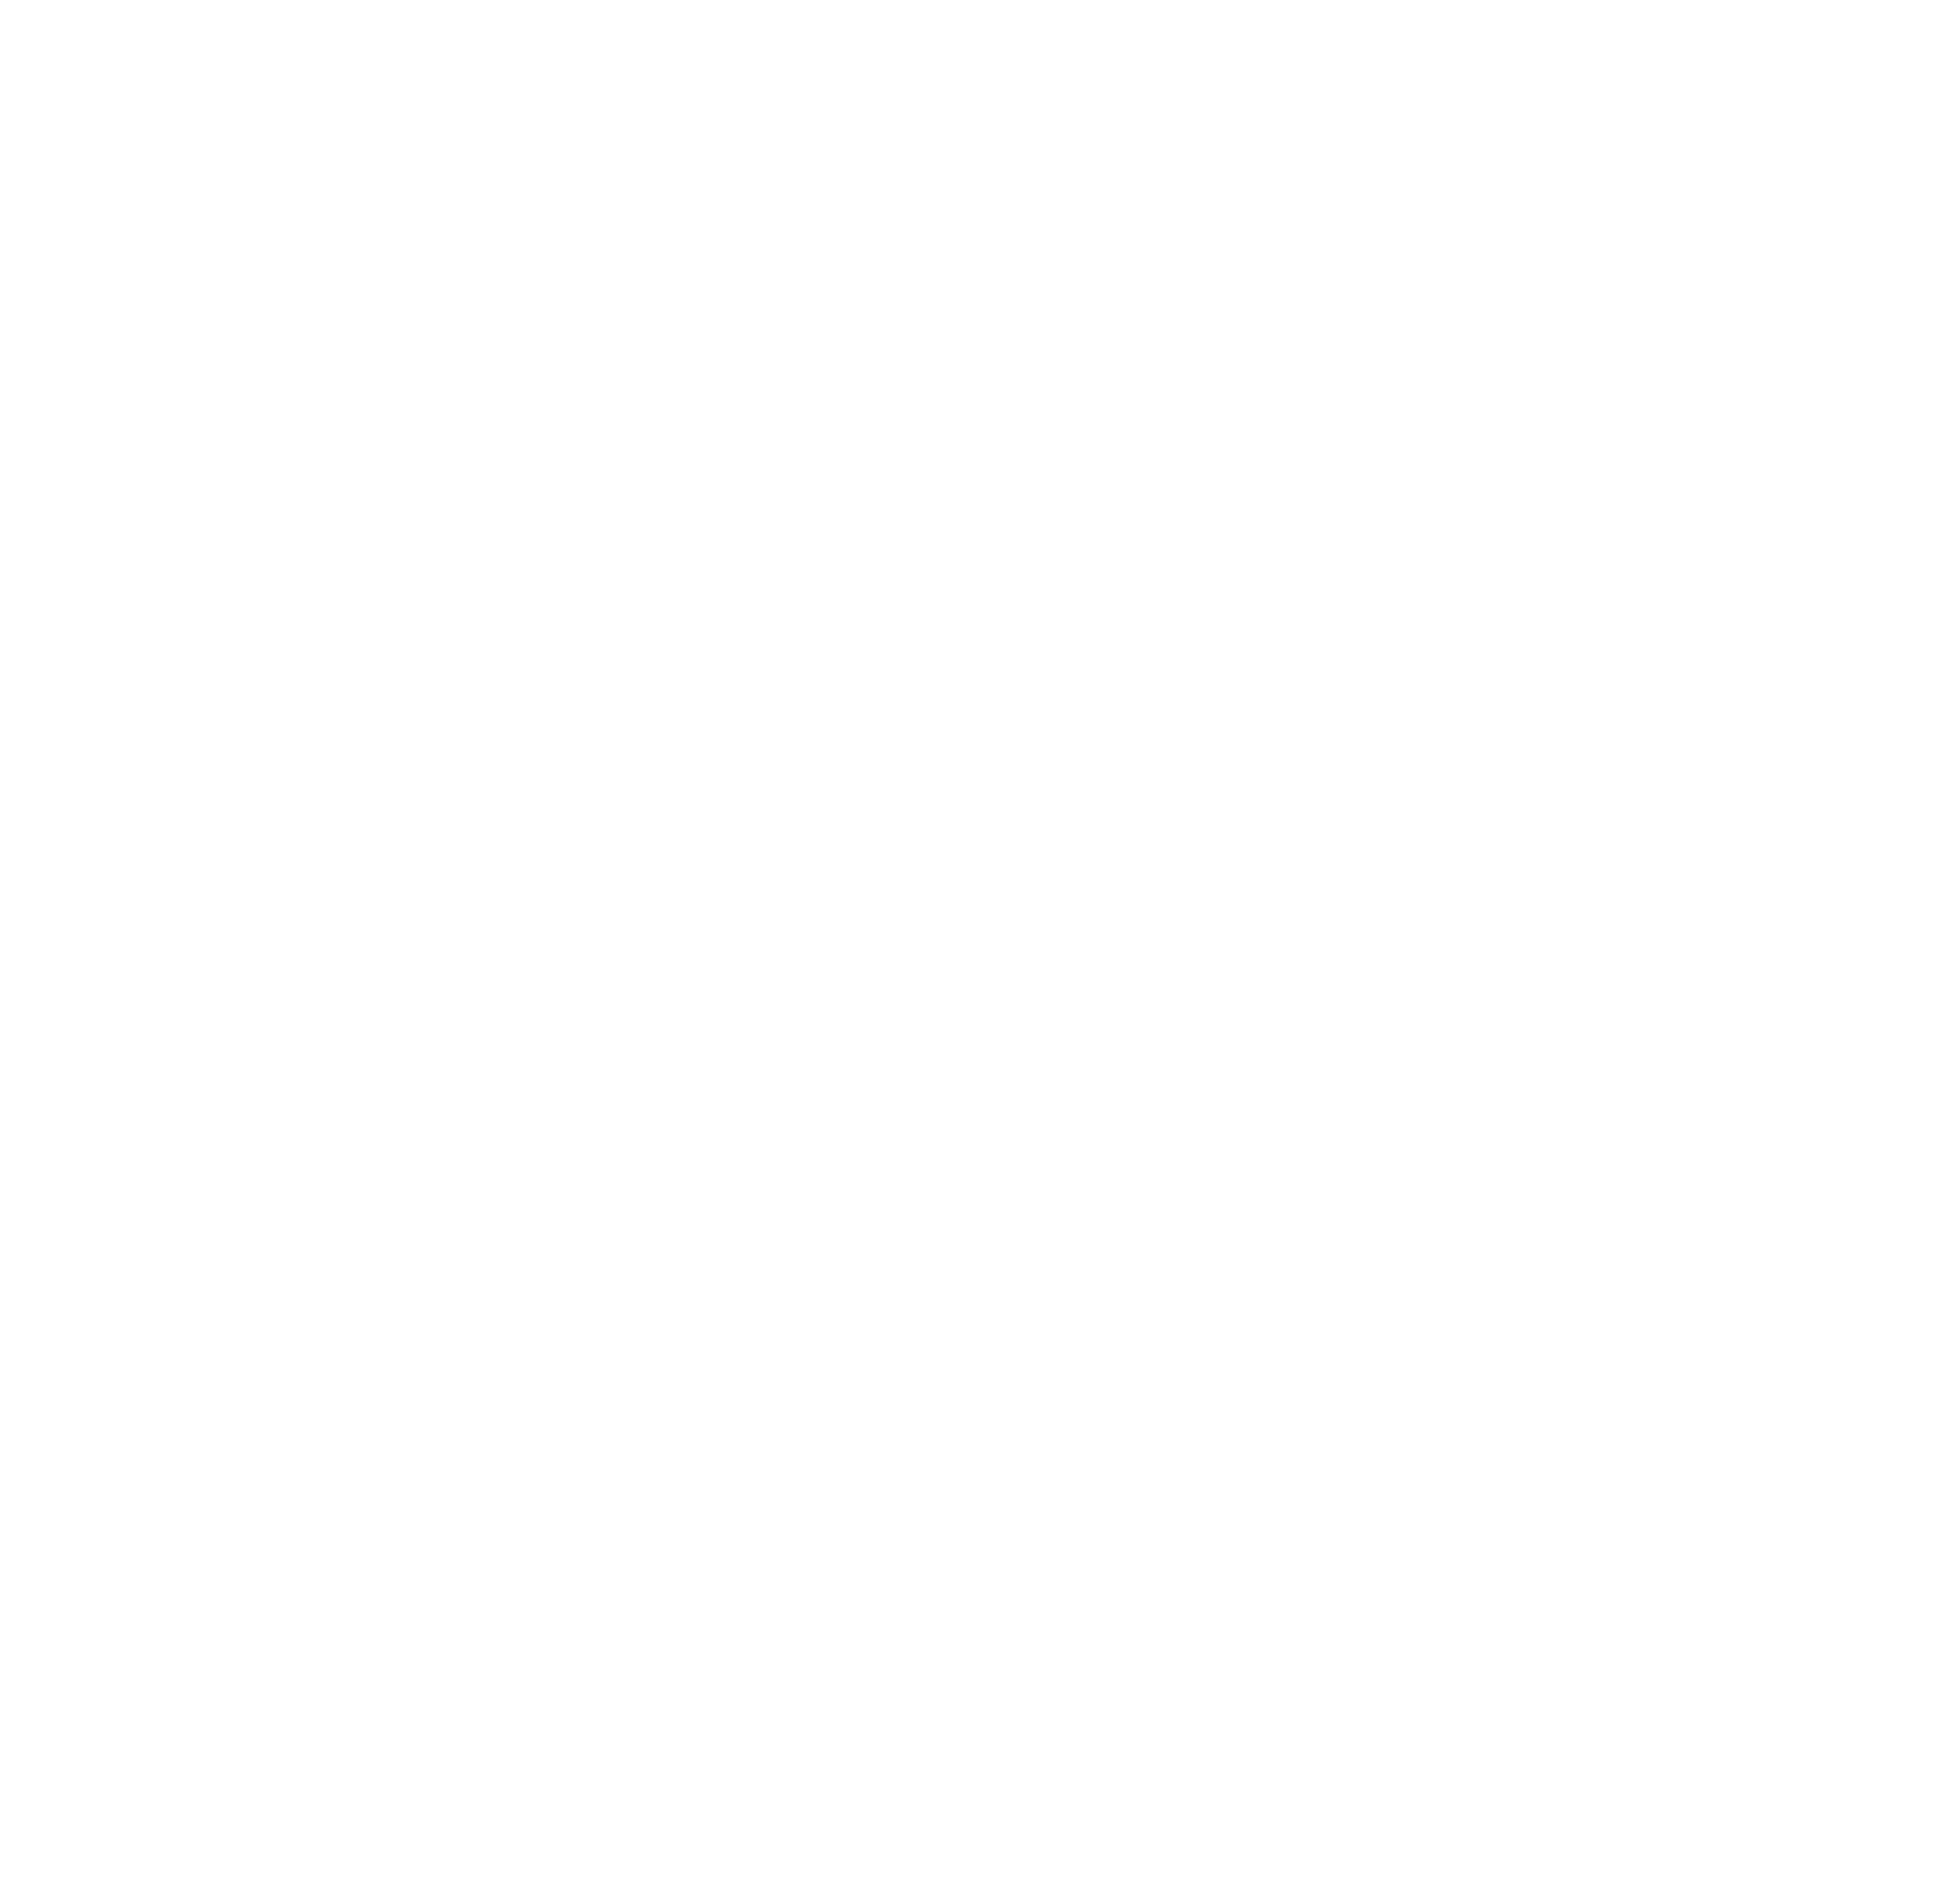 Max visual